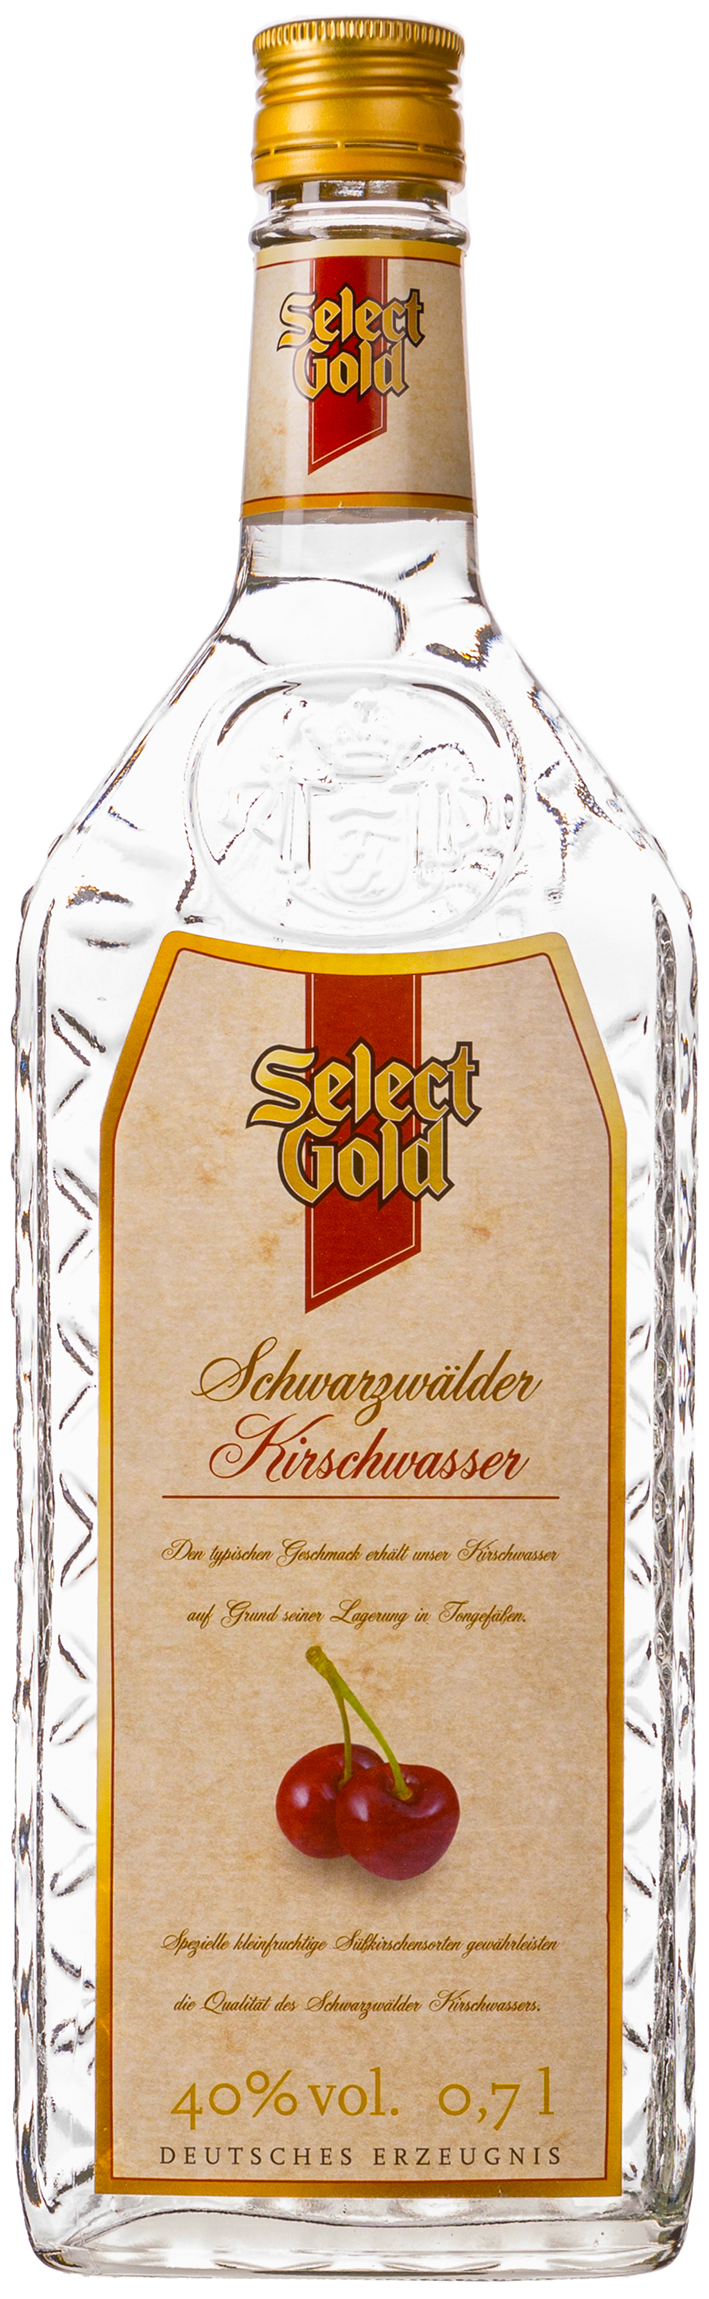 Select Gold Schwarzwälder Kirschwasser 0,7L 40